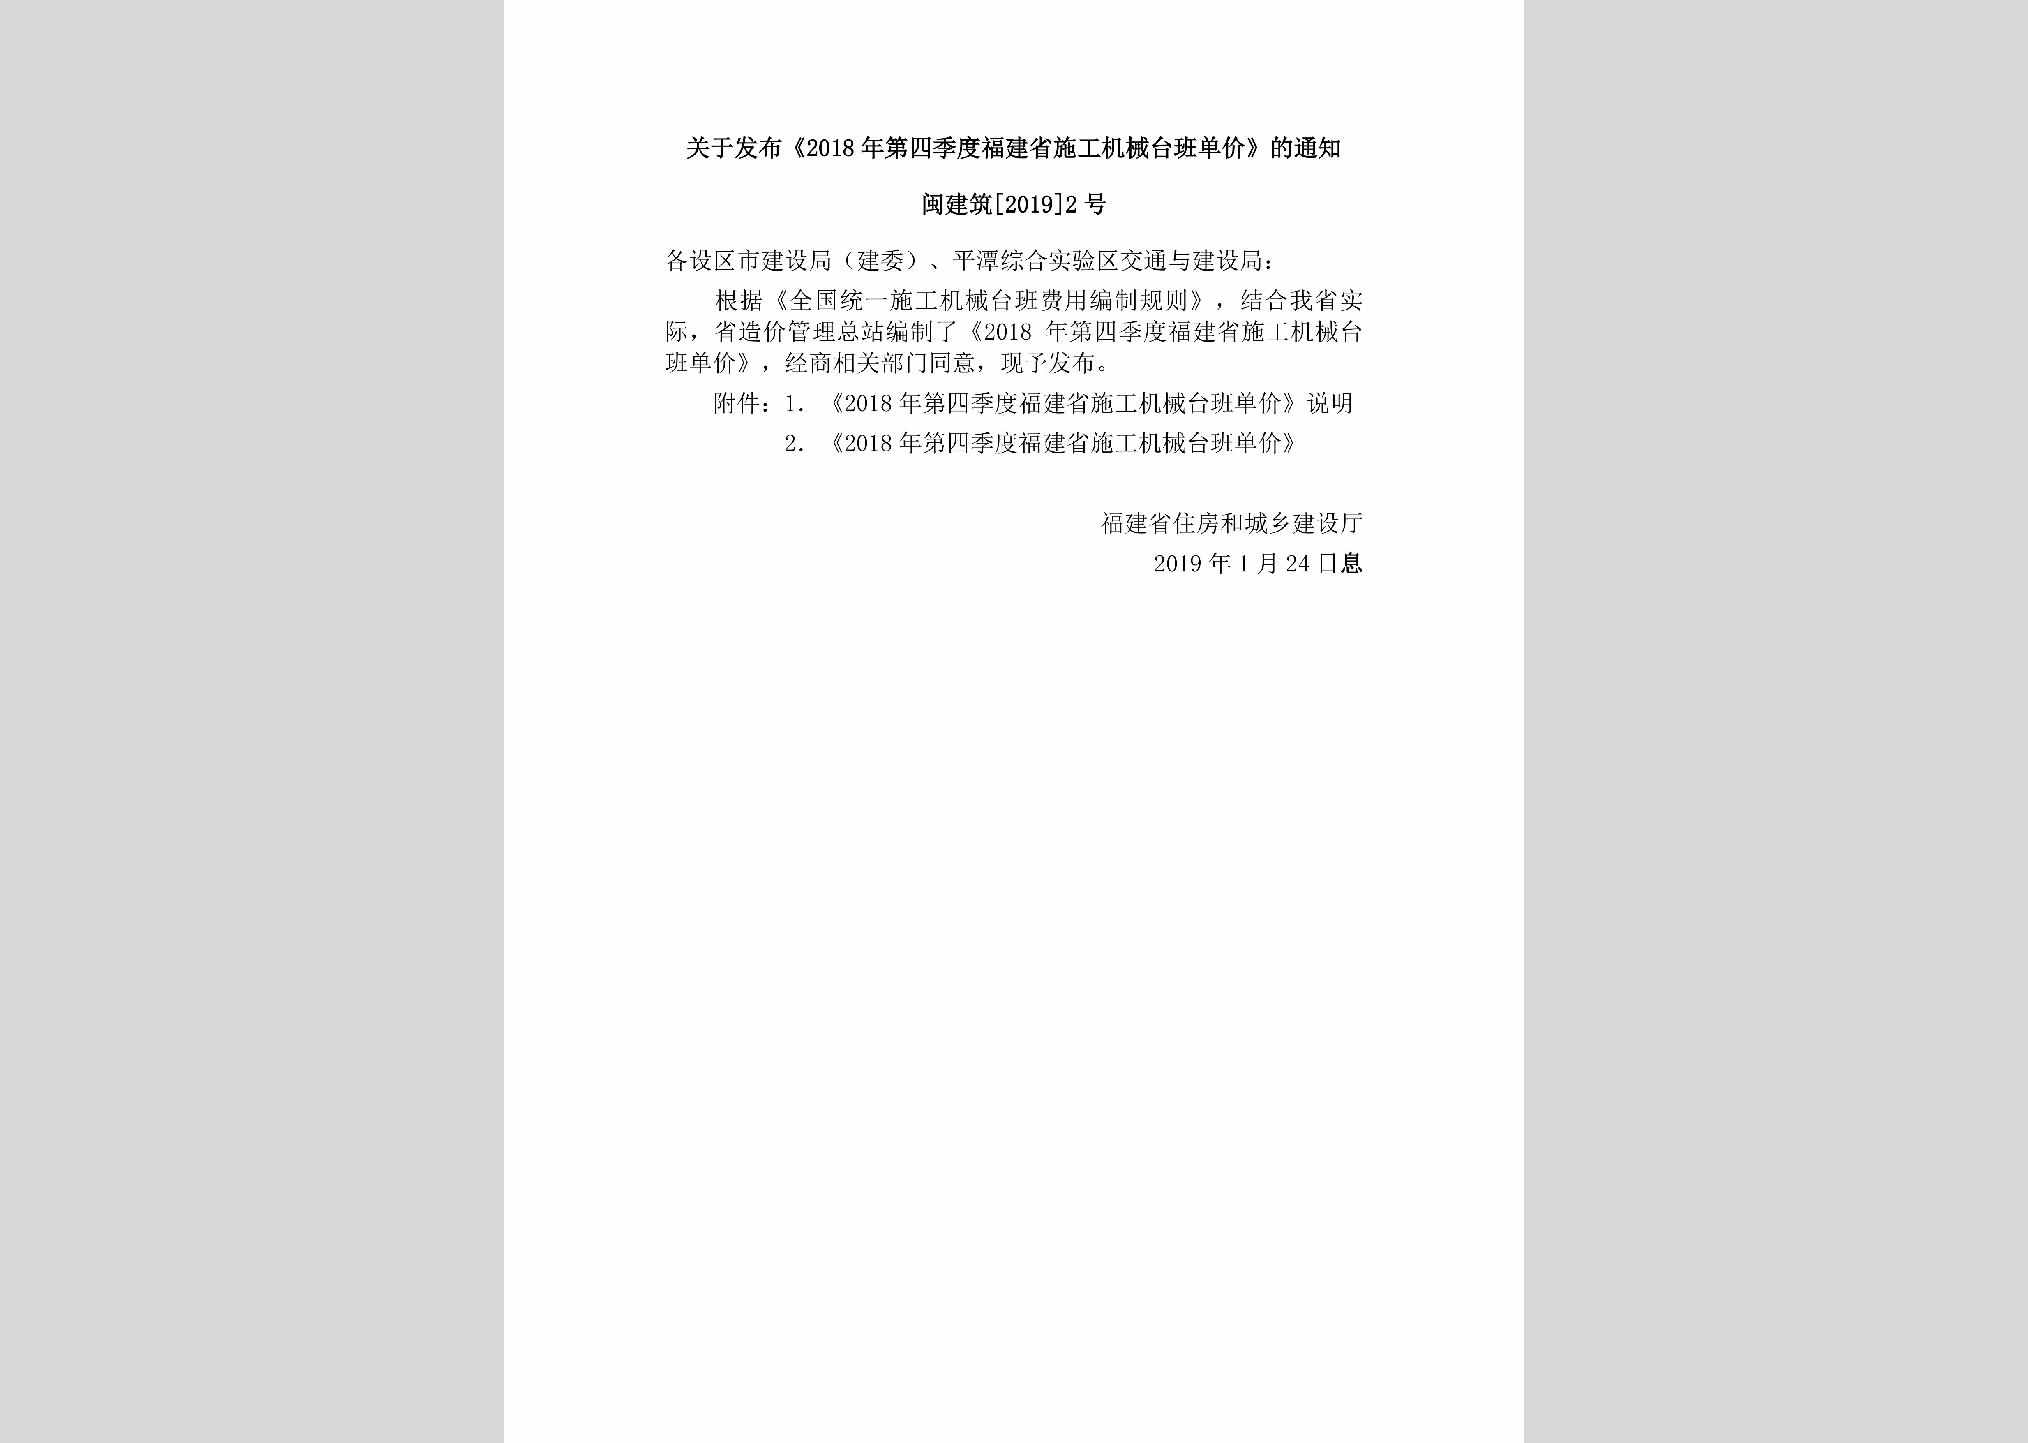 闽建筑[2019]2号：关于发布《2018年第四季度福建省施工机械台班单价》的通知